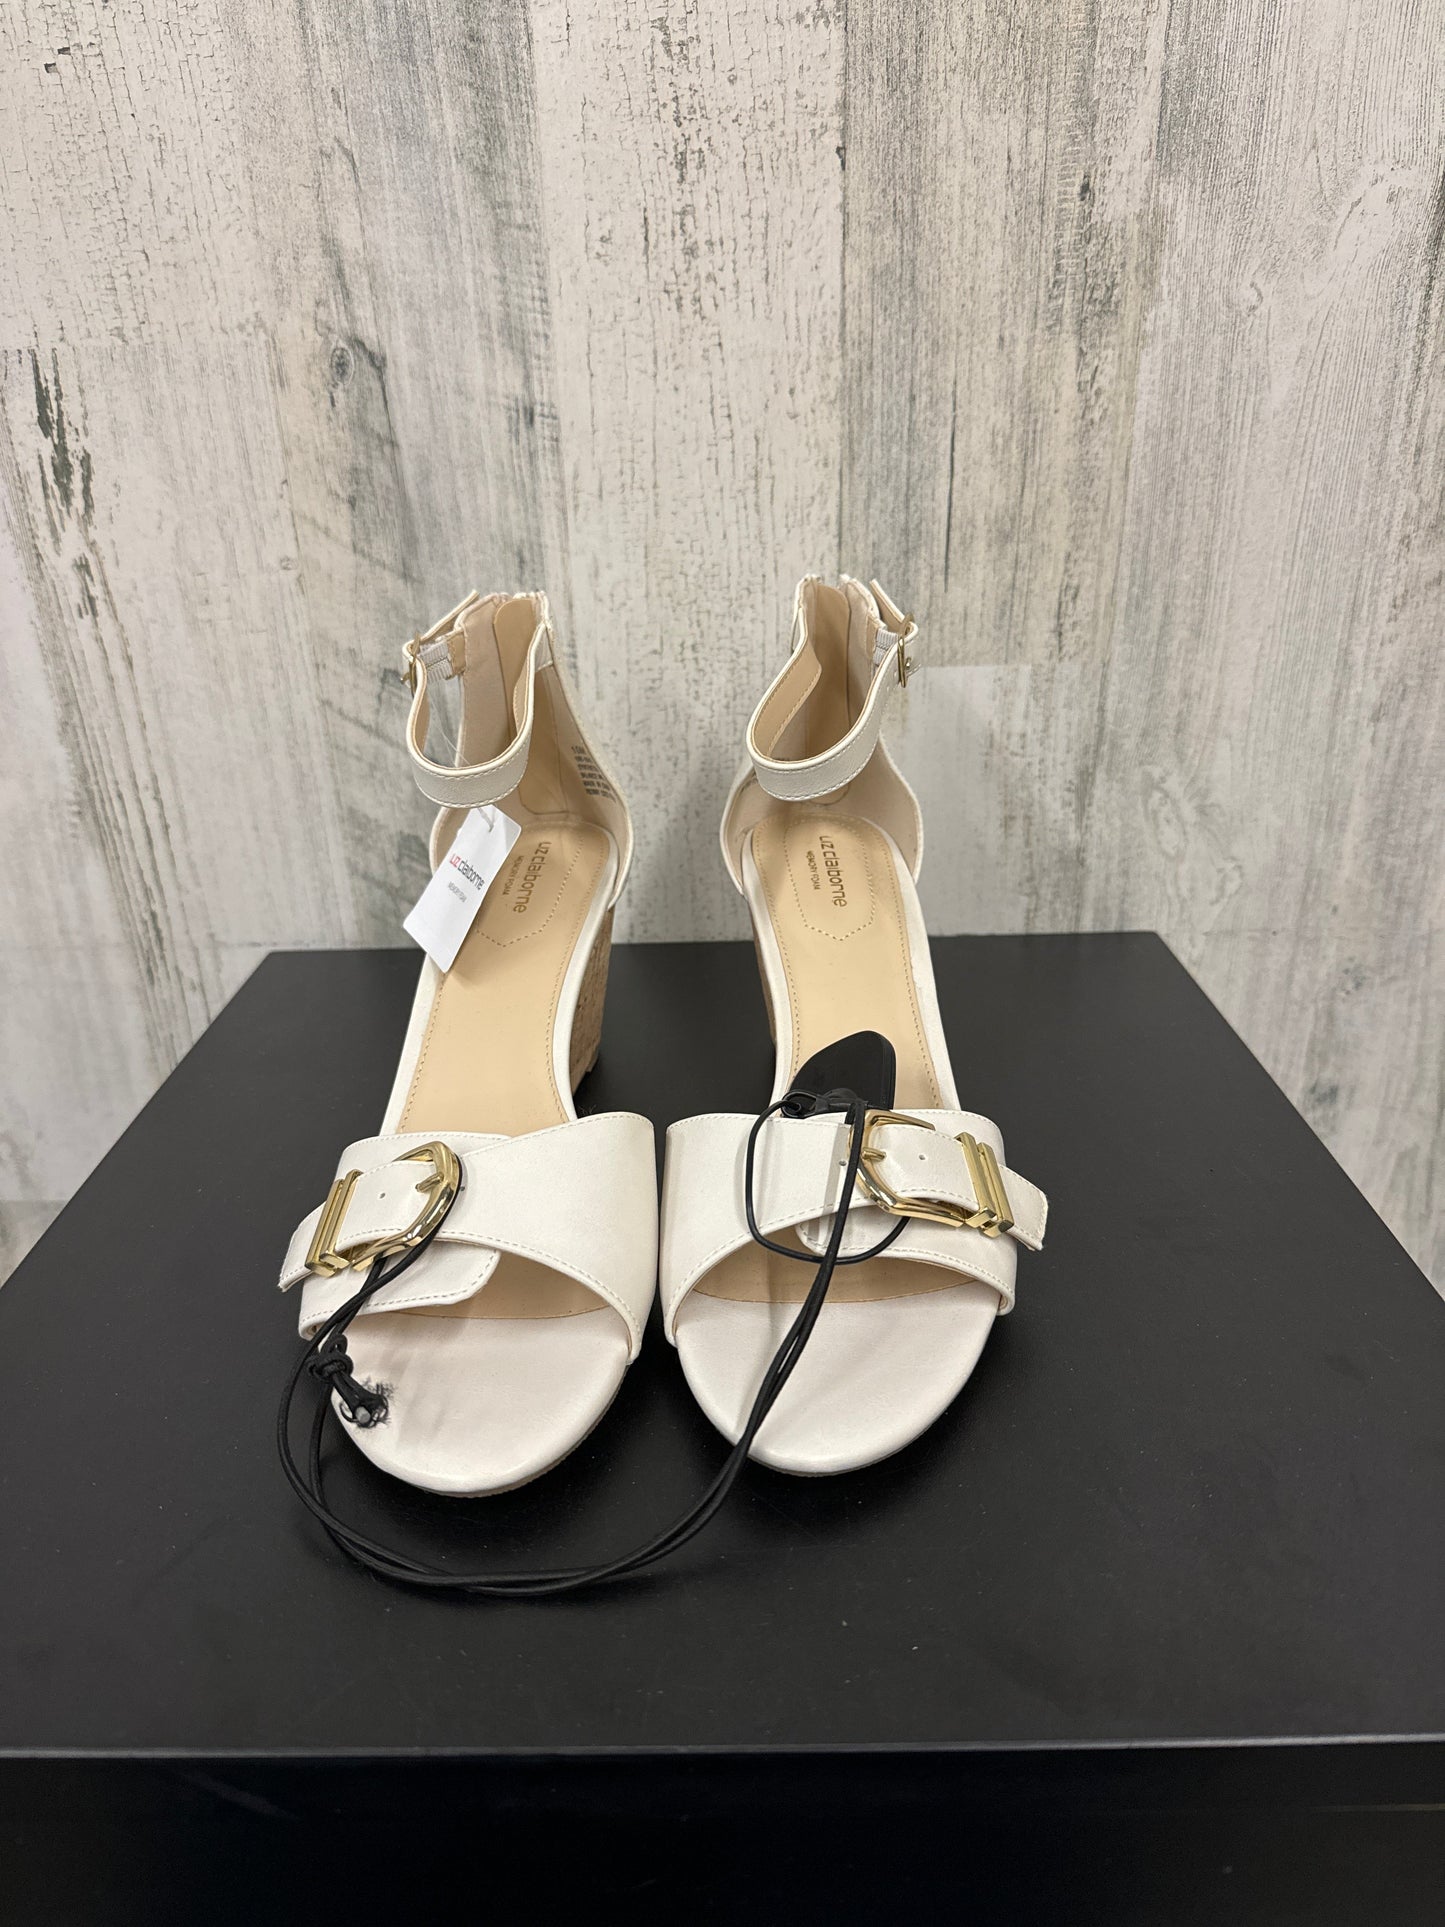 Sandals Heels Wedge By Liz Claiborne  Size: 10